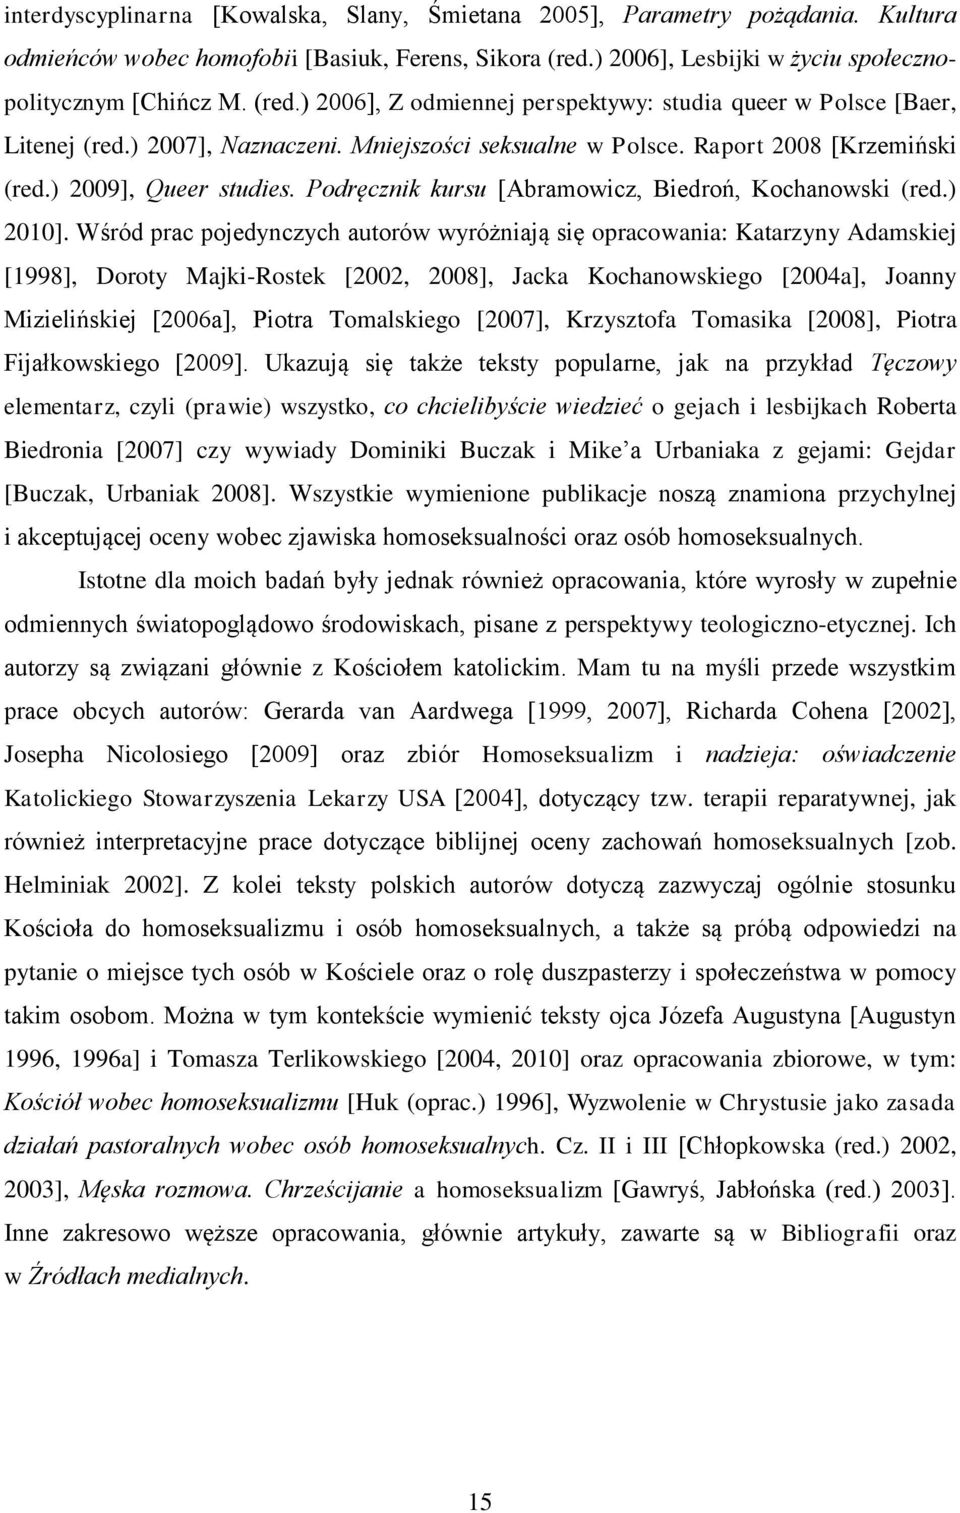 Raport 2008 [Krzemiński (red.) 2009], Queer studies. Podręcznik kursu [Abramowicz, Biedroń, Kochanowski (red.) 2010].